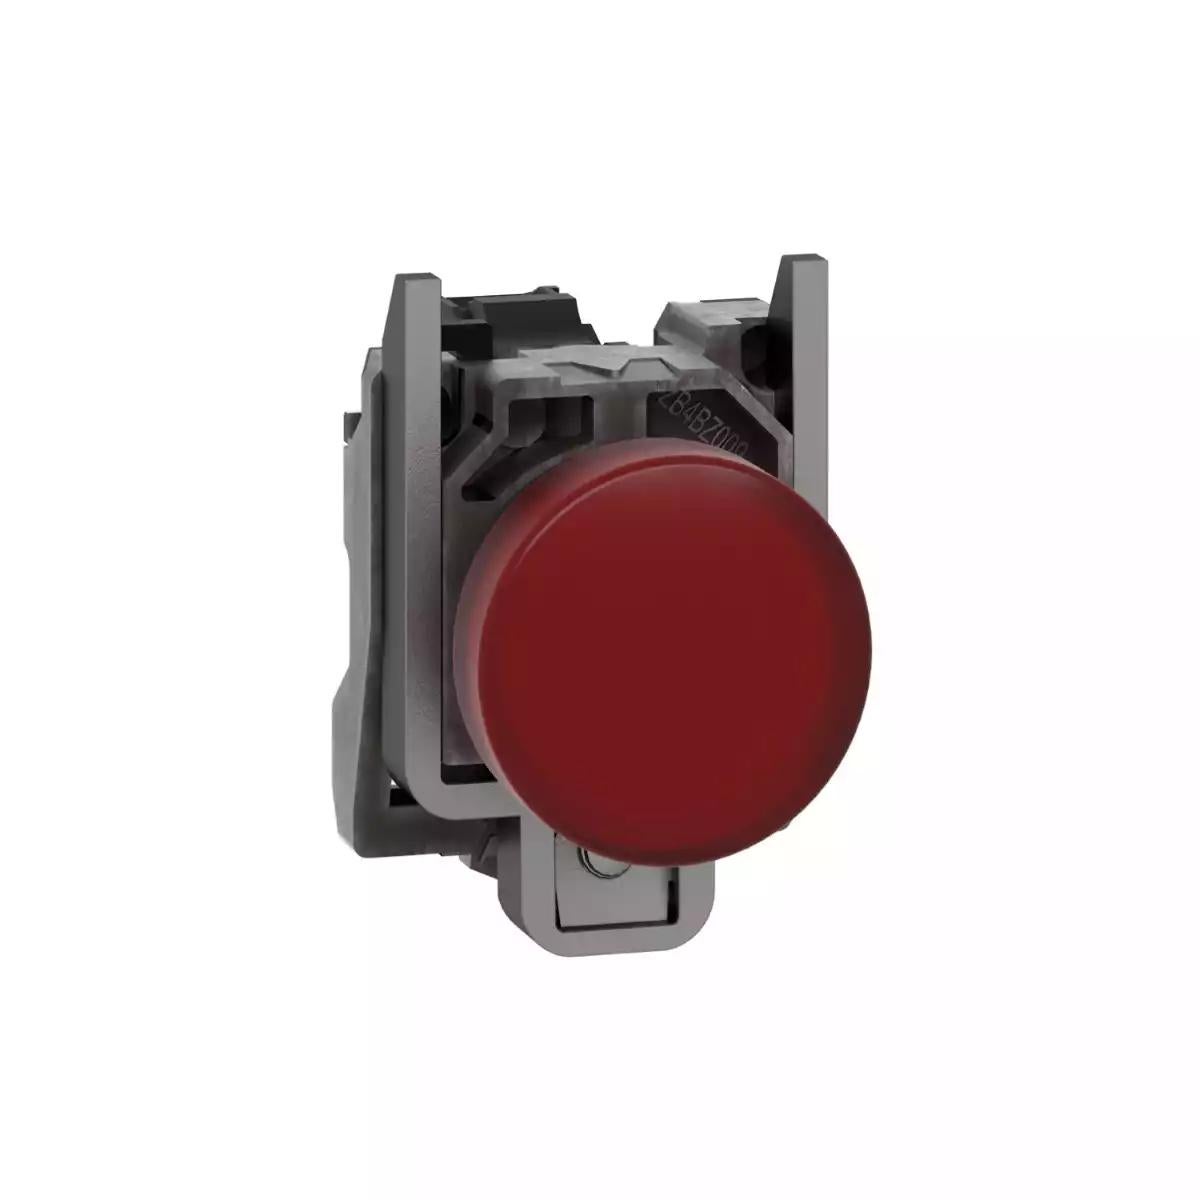 Pilot light, Harmony XB4,metal, red, 22mm, universal LED, plain lens, 110…120V AC